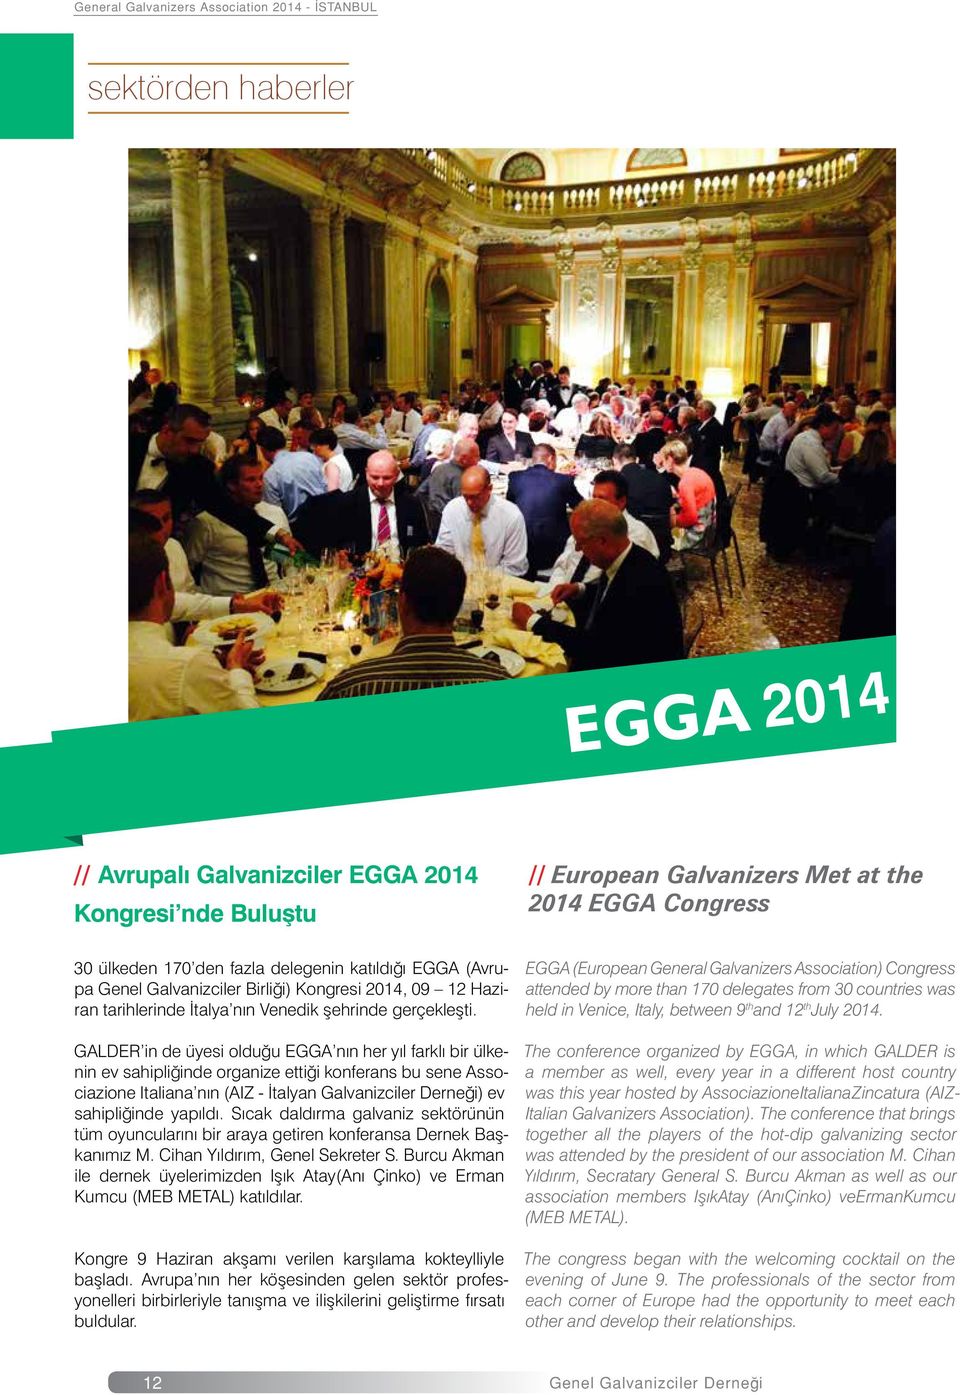 GALDER in de üyesi olduğu EGGA nın her yıl farklı bir ülkenin ev sahipliğinde organize ettiği konferans bu sene Associazione Italiana nın (AIZ - İtalyan Galvanizciler Derneği) ev sahipliğinde yapıldı.